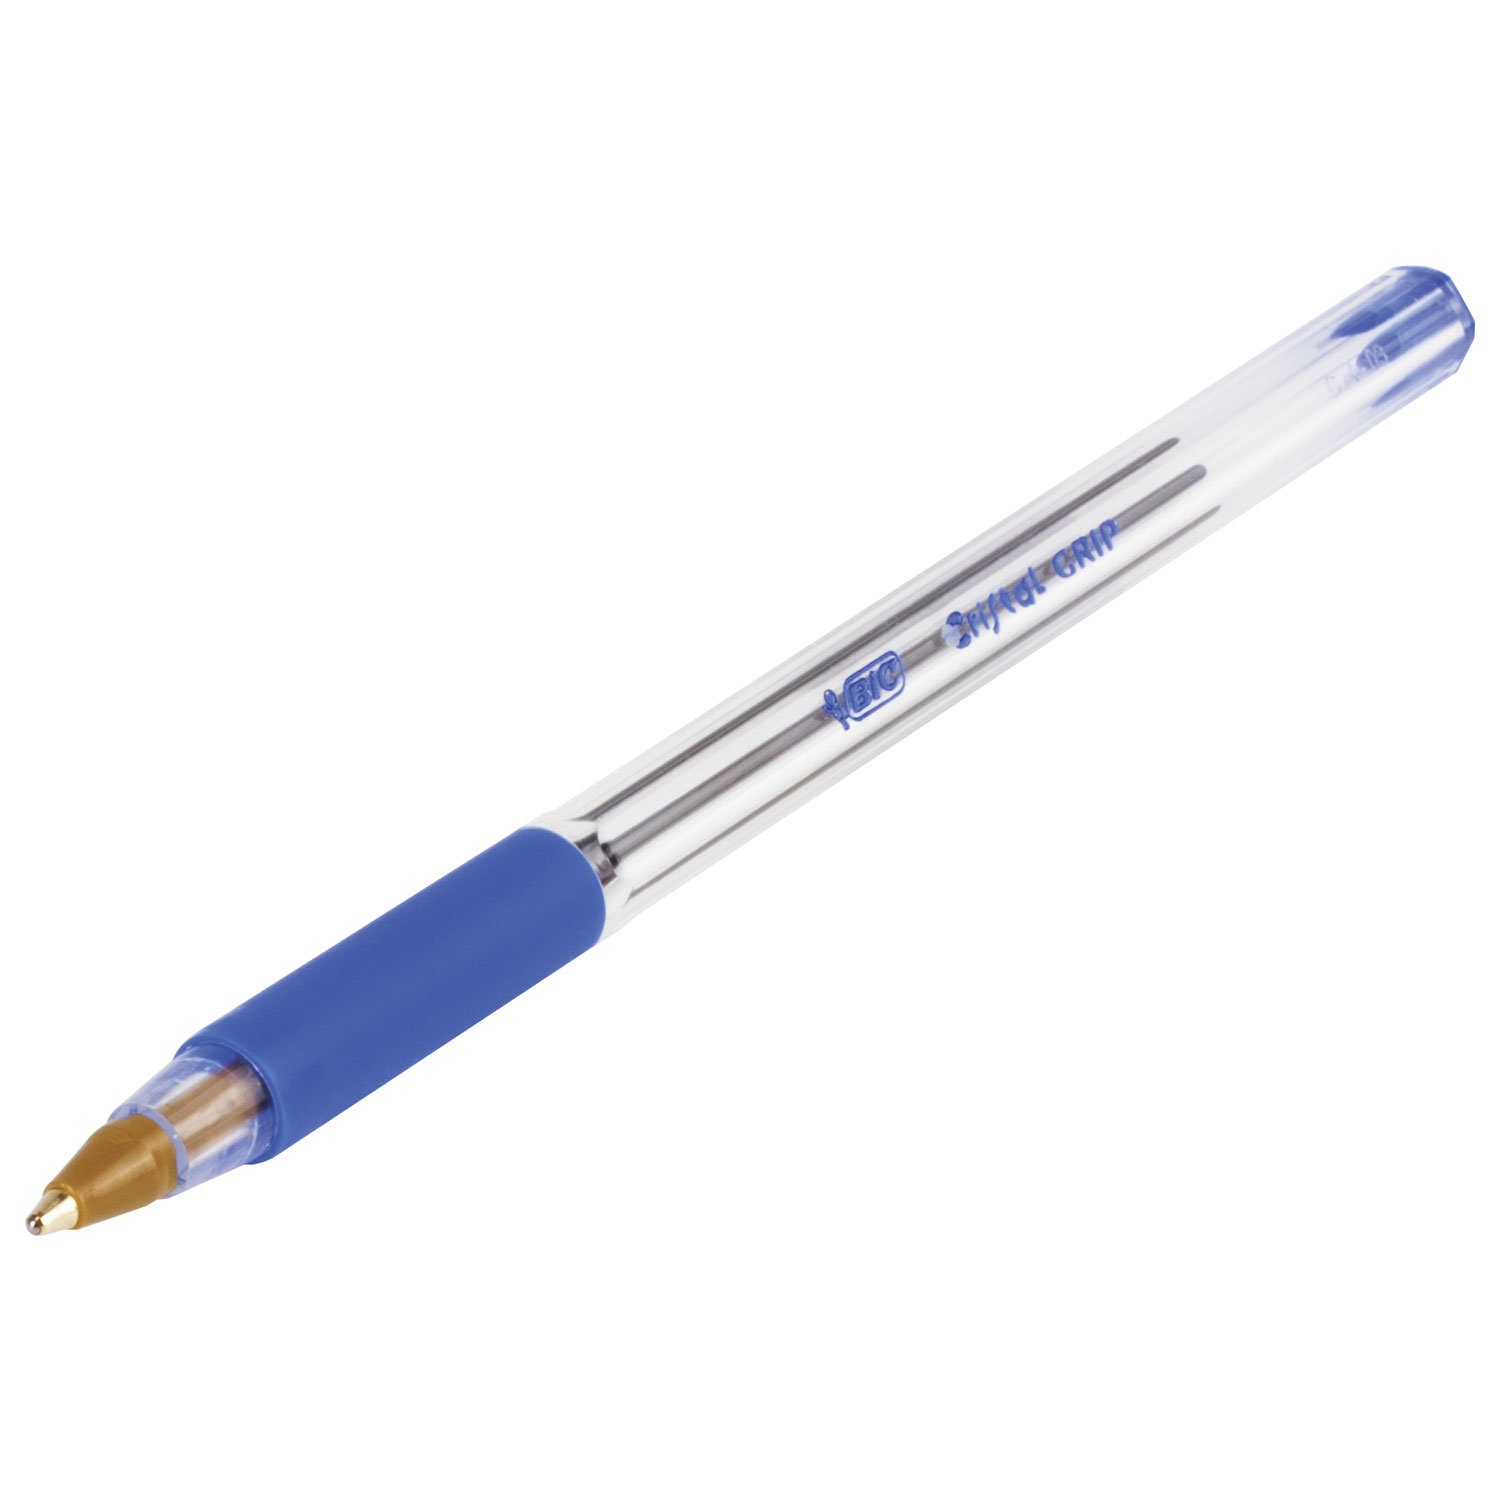 Ручка с прозрачным корпусом. Ручка BIC Cristal. Ручка шариковая BIC Cristal (синий). Ручка шариковая BIC Cristal синяя 1,6 мм. 'Ручка шариковая BIC Cristal синий 0,32 мм Франция.